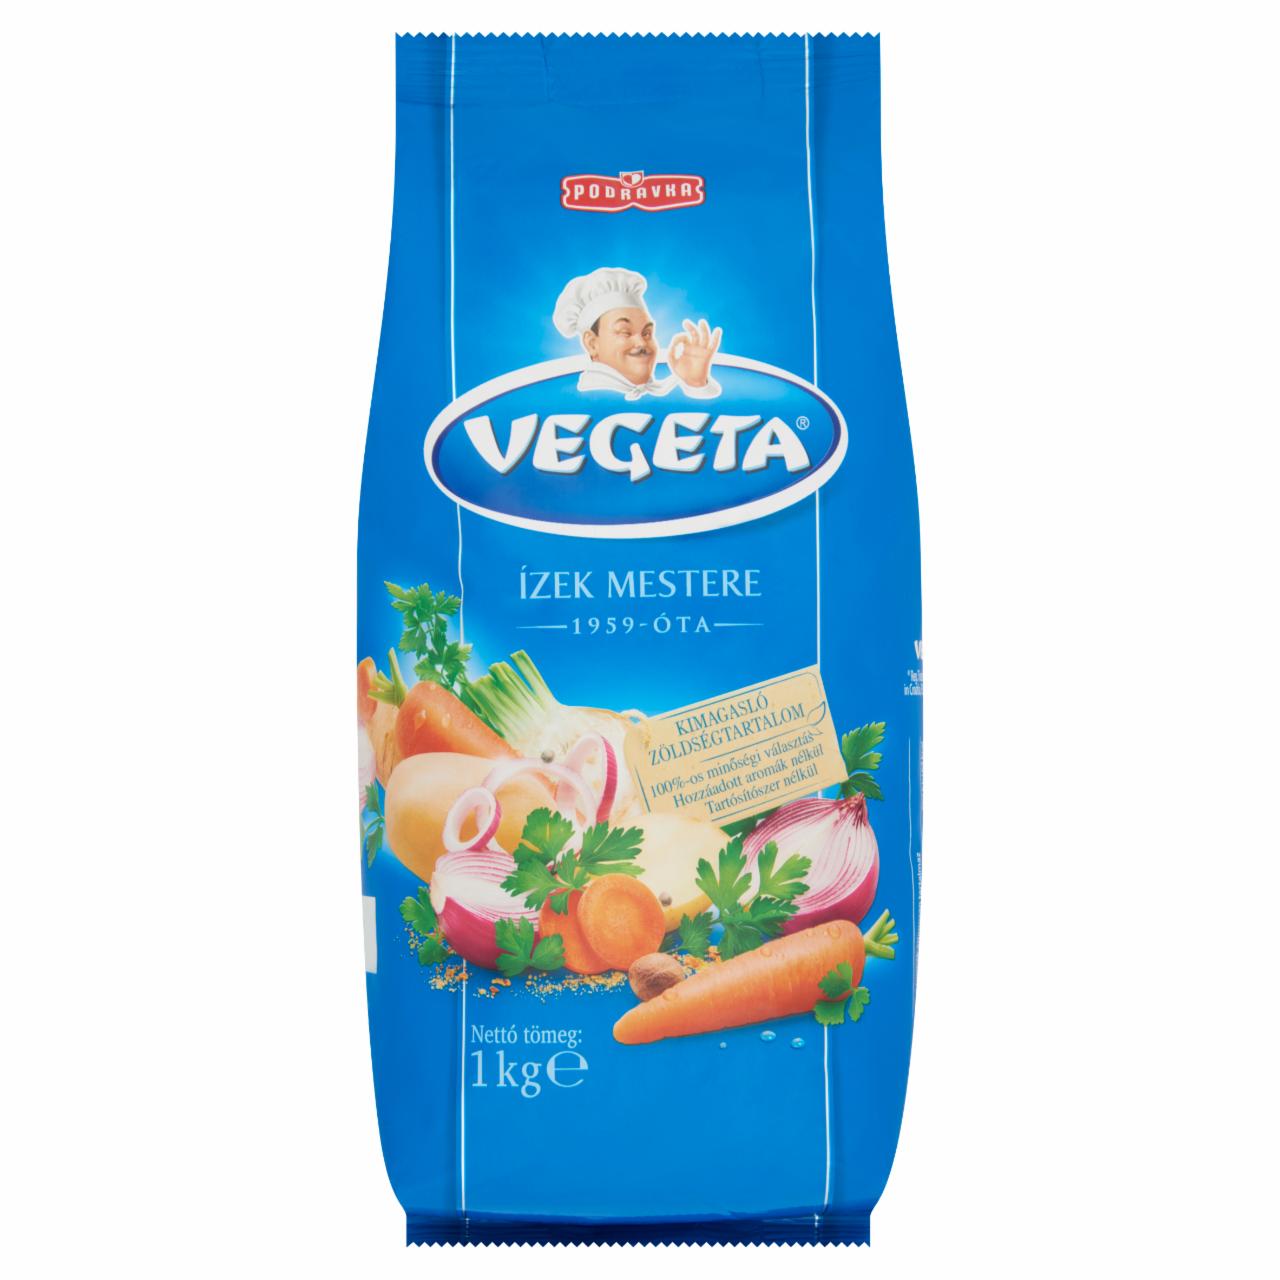 Képek - Vegeta ételízesítő 1 kg